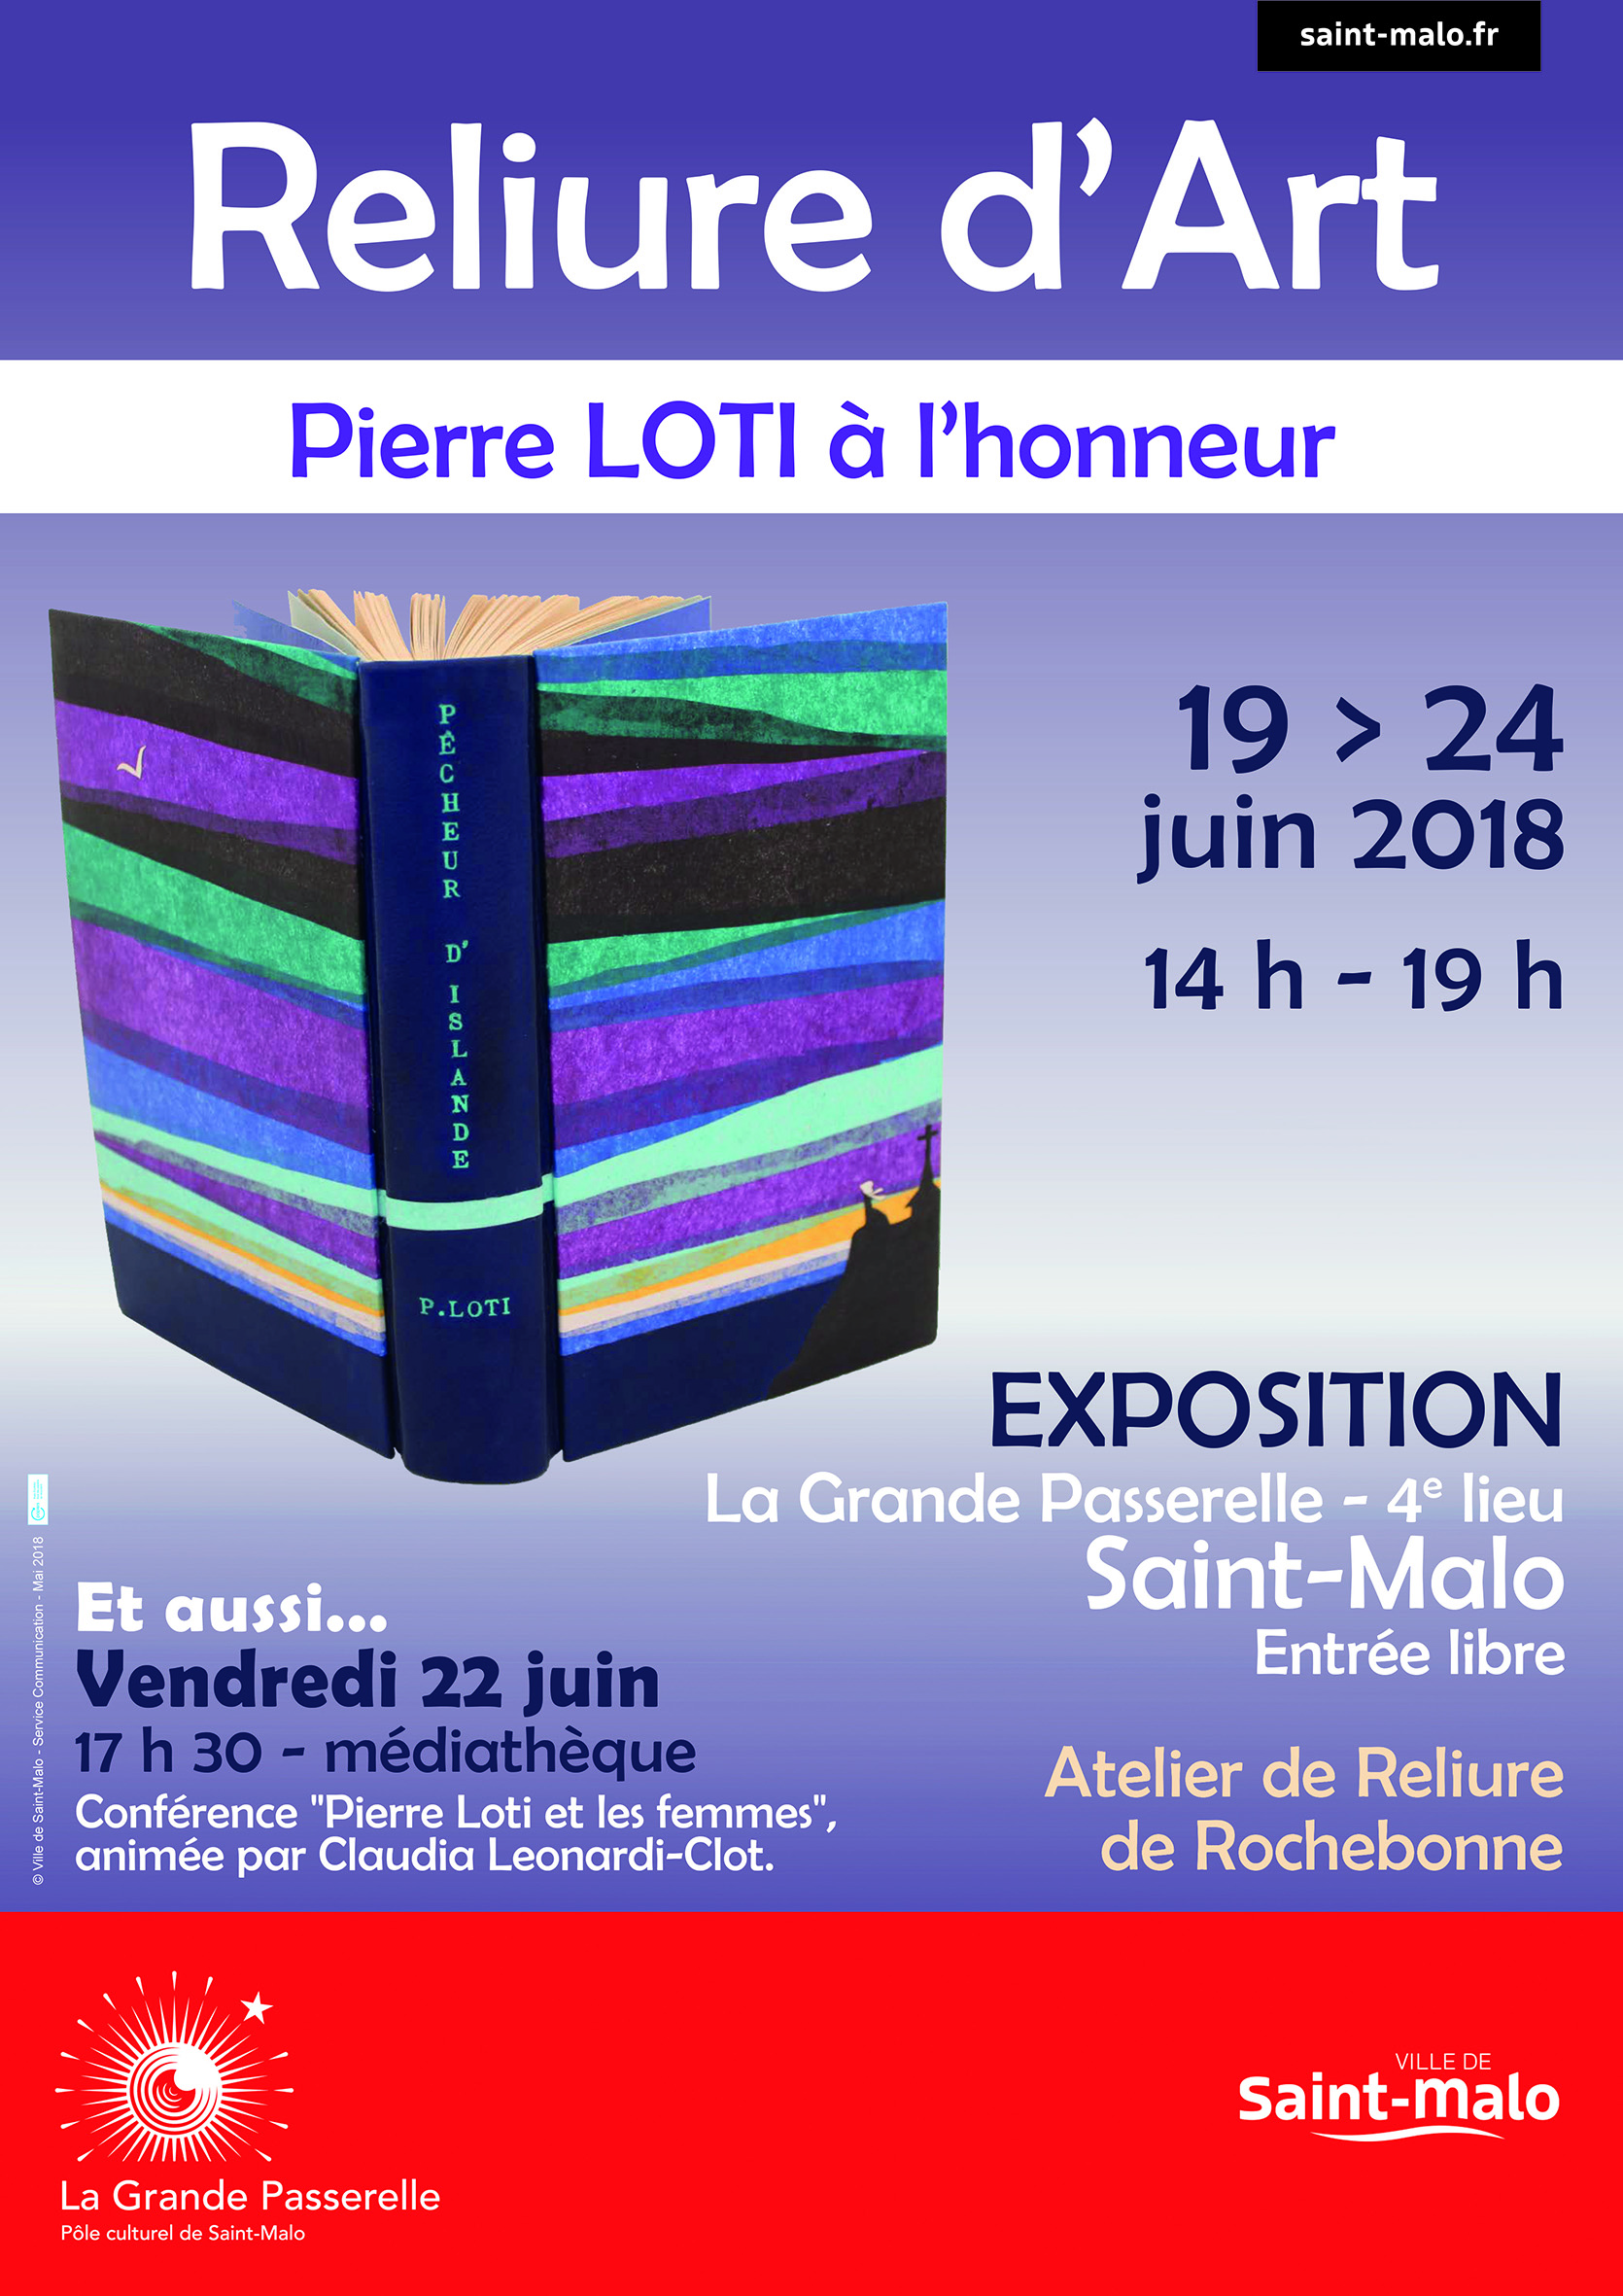 Exposition Atelier de Reliure Rochebonne Saint-Malo